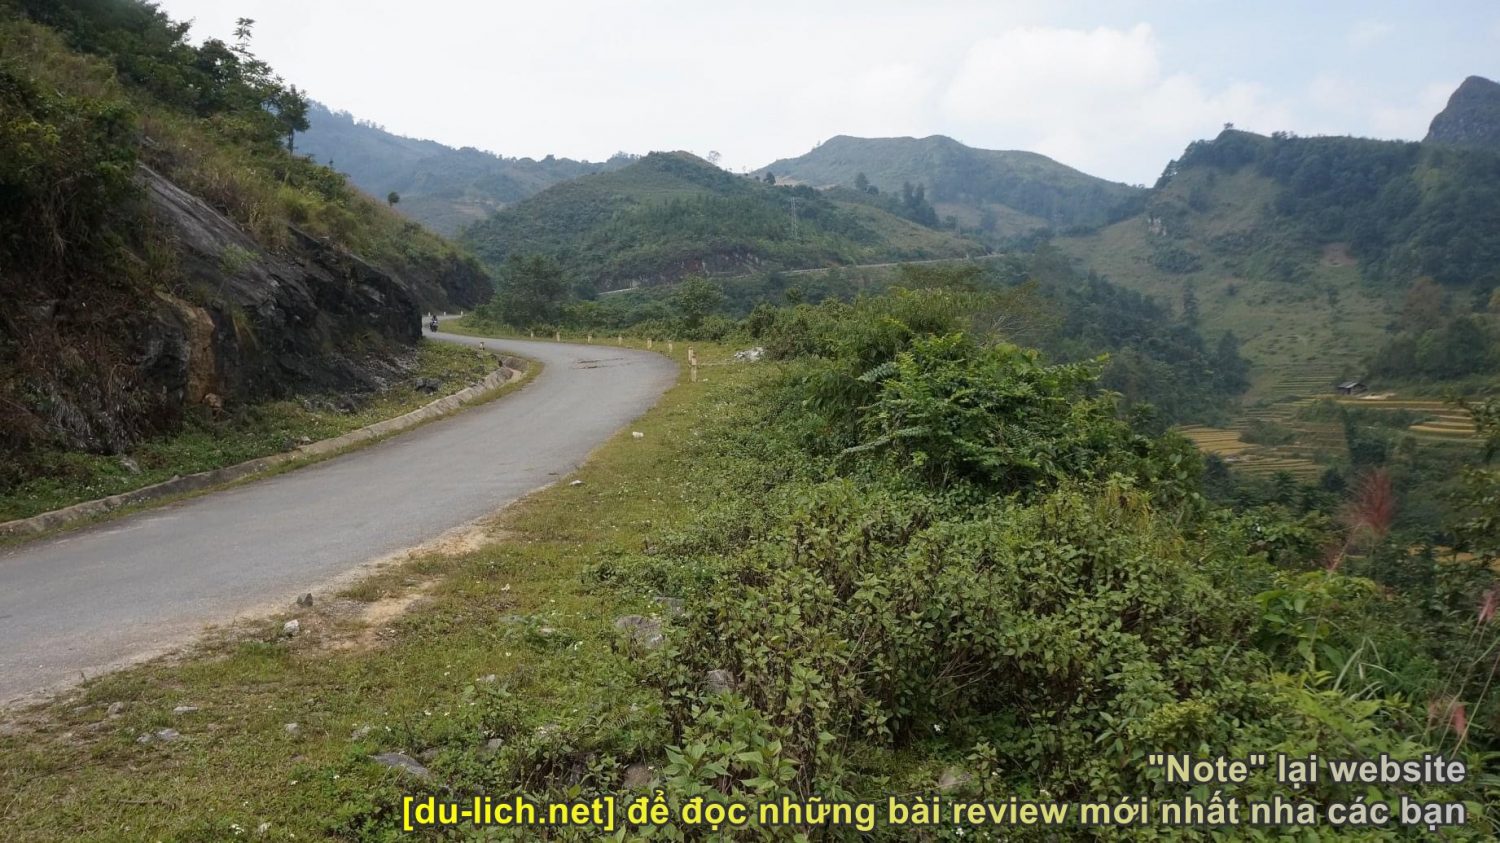 Cách đi từ Hà Giang sang Sapa: Phong cảnh đường 279 đoạn từ Hà Giang đi Sapa